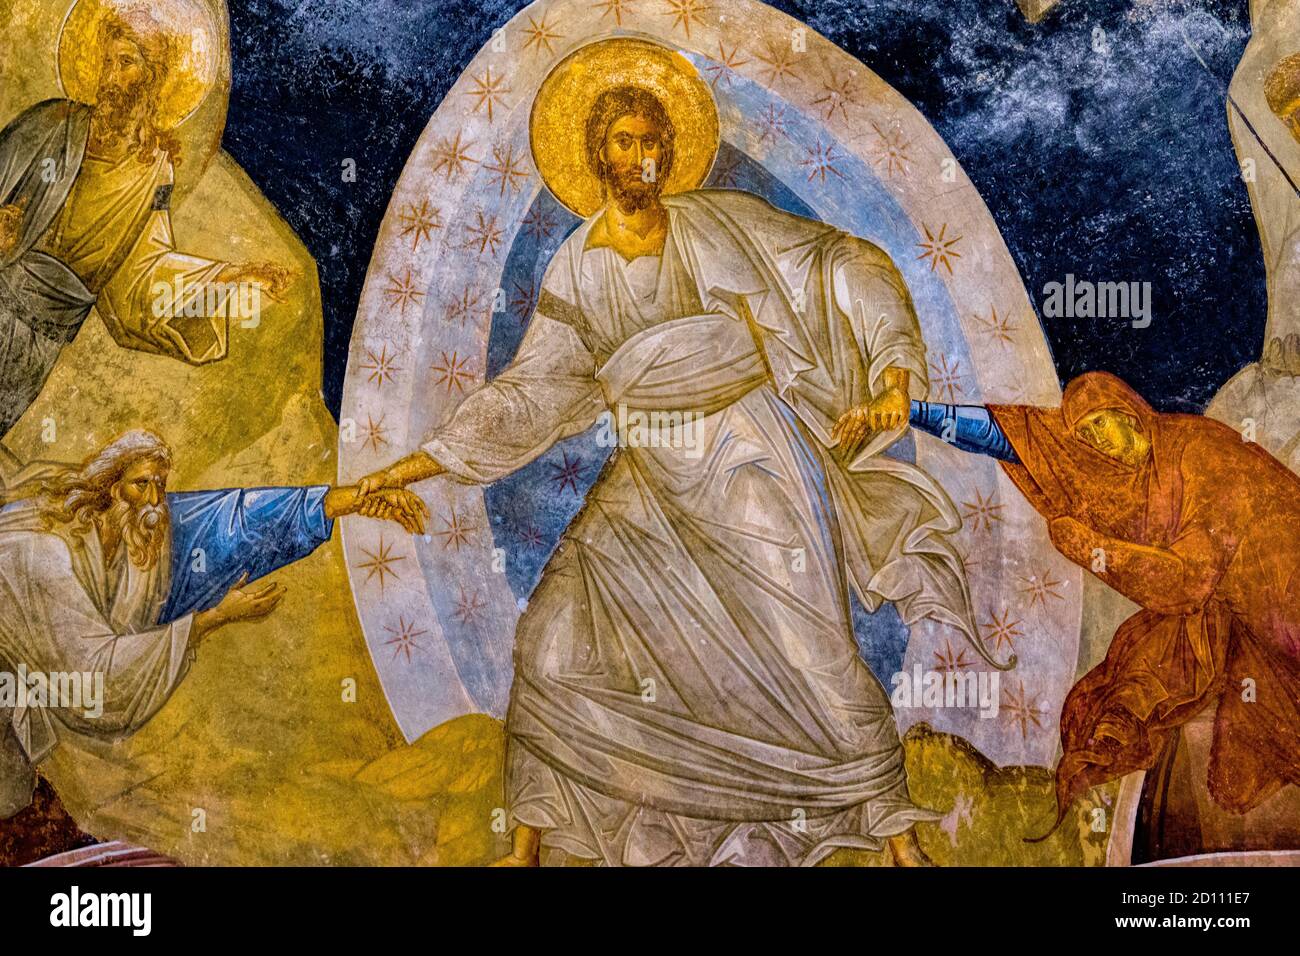 Christus gibt Adam und Eva die Hände und rettet sie vor der Hölle, ein byzantinisches Fresko in der Chora-Kirche in Istanbul, 11. Oktober 2013 Stockfoto